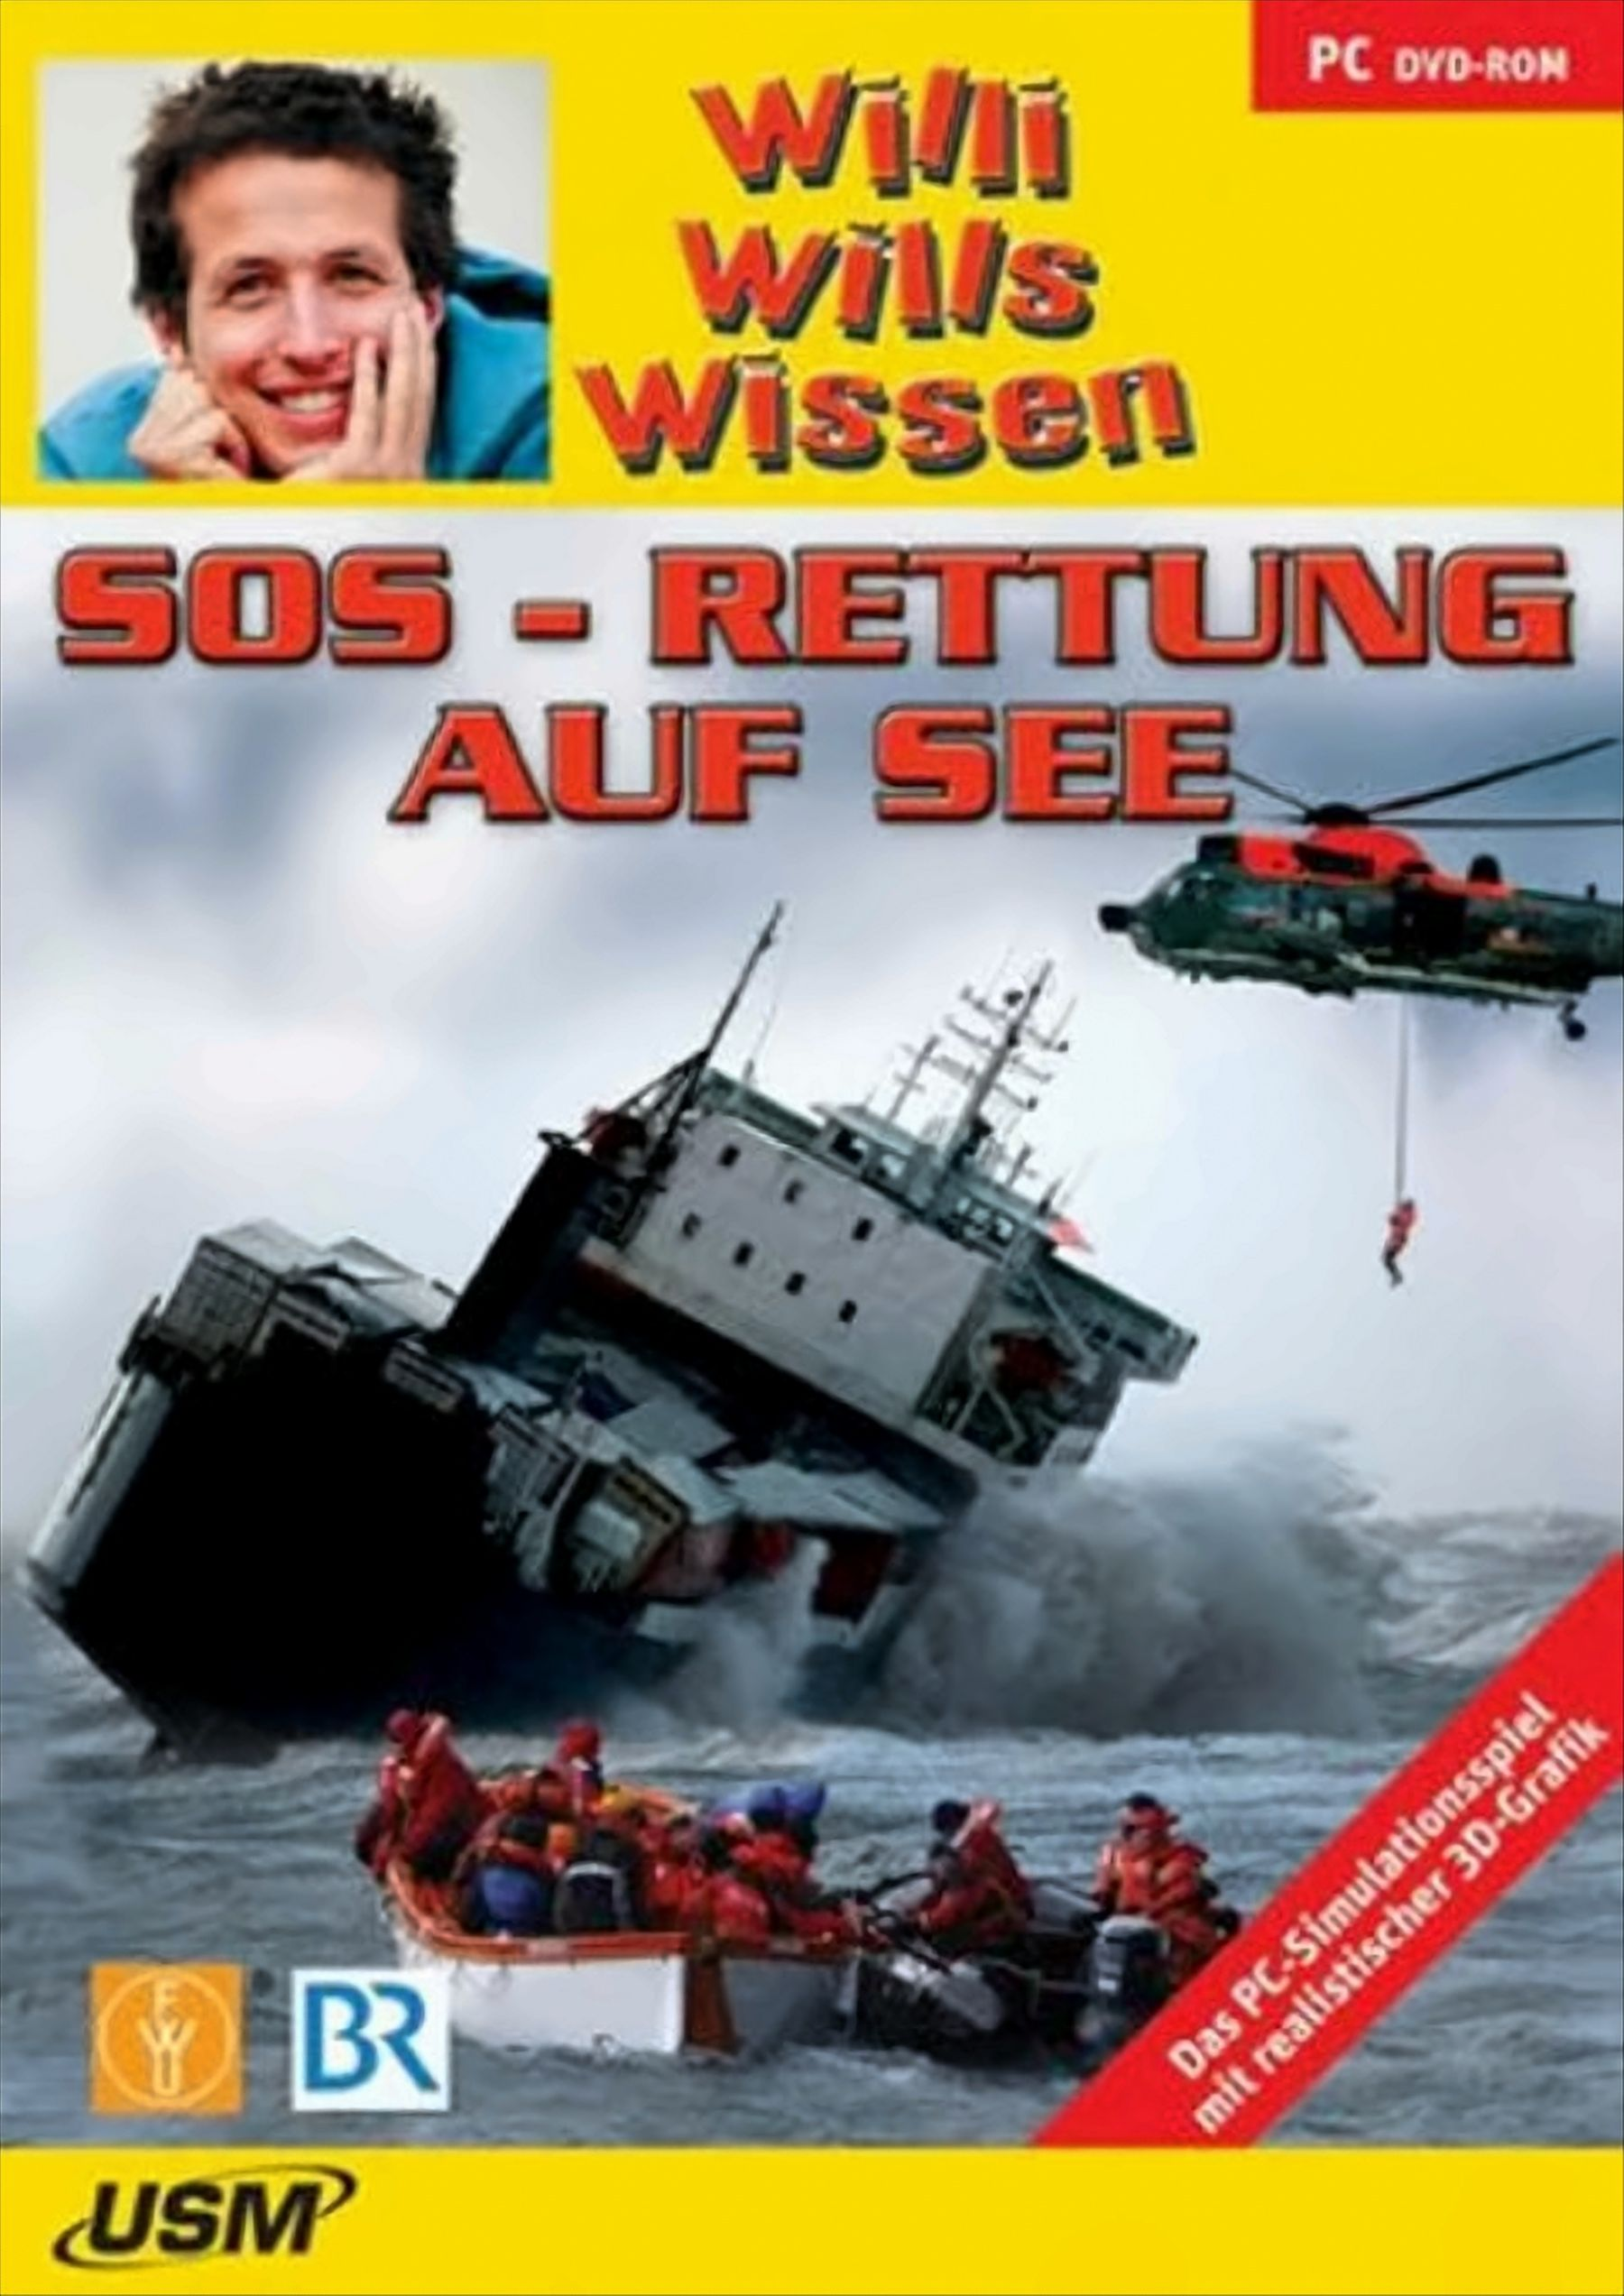 Willi wills wissen: SOS - Rettung (DVD-ROM) auf - See [PC